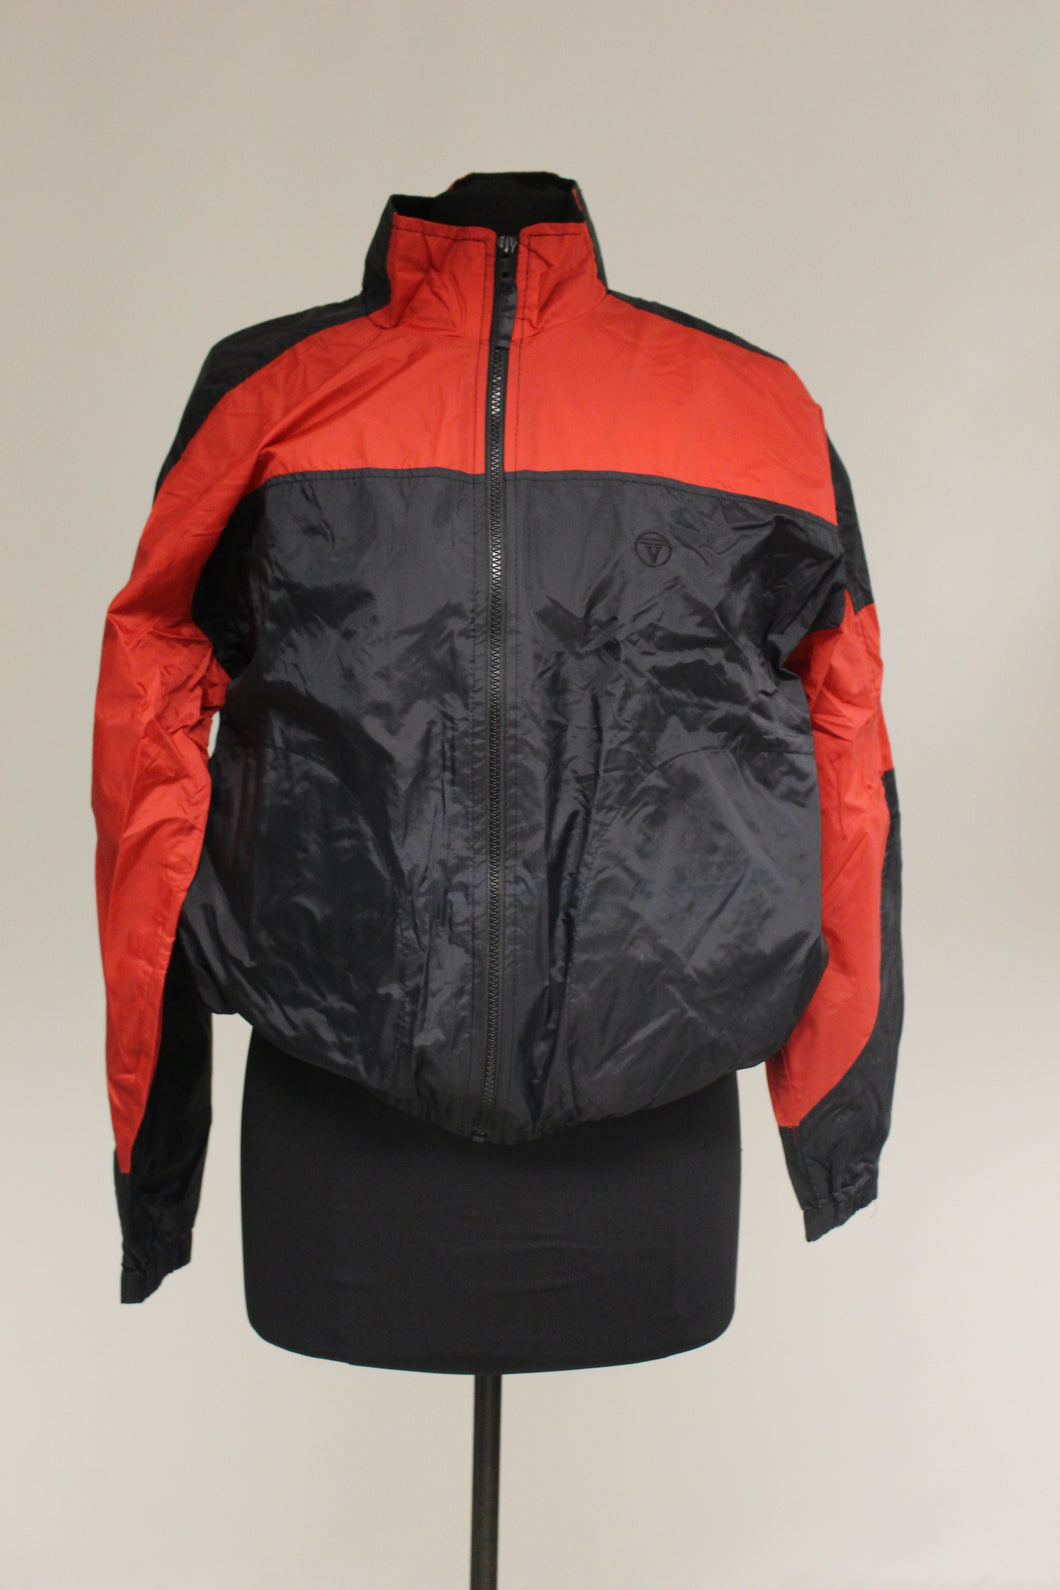 Olivia Valere Ladies Jacket. Black/Red, Medium